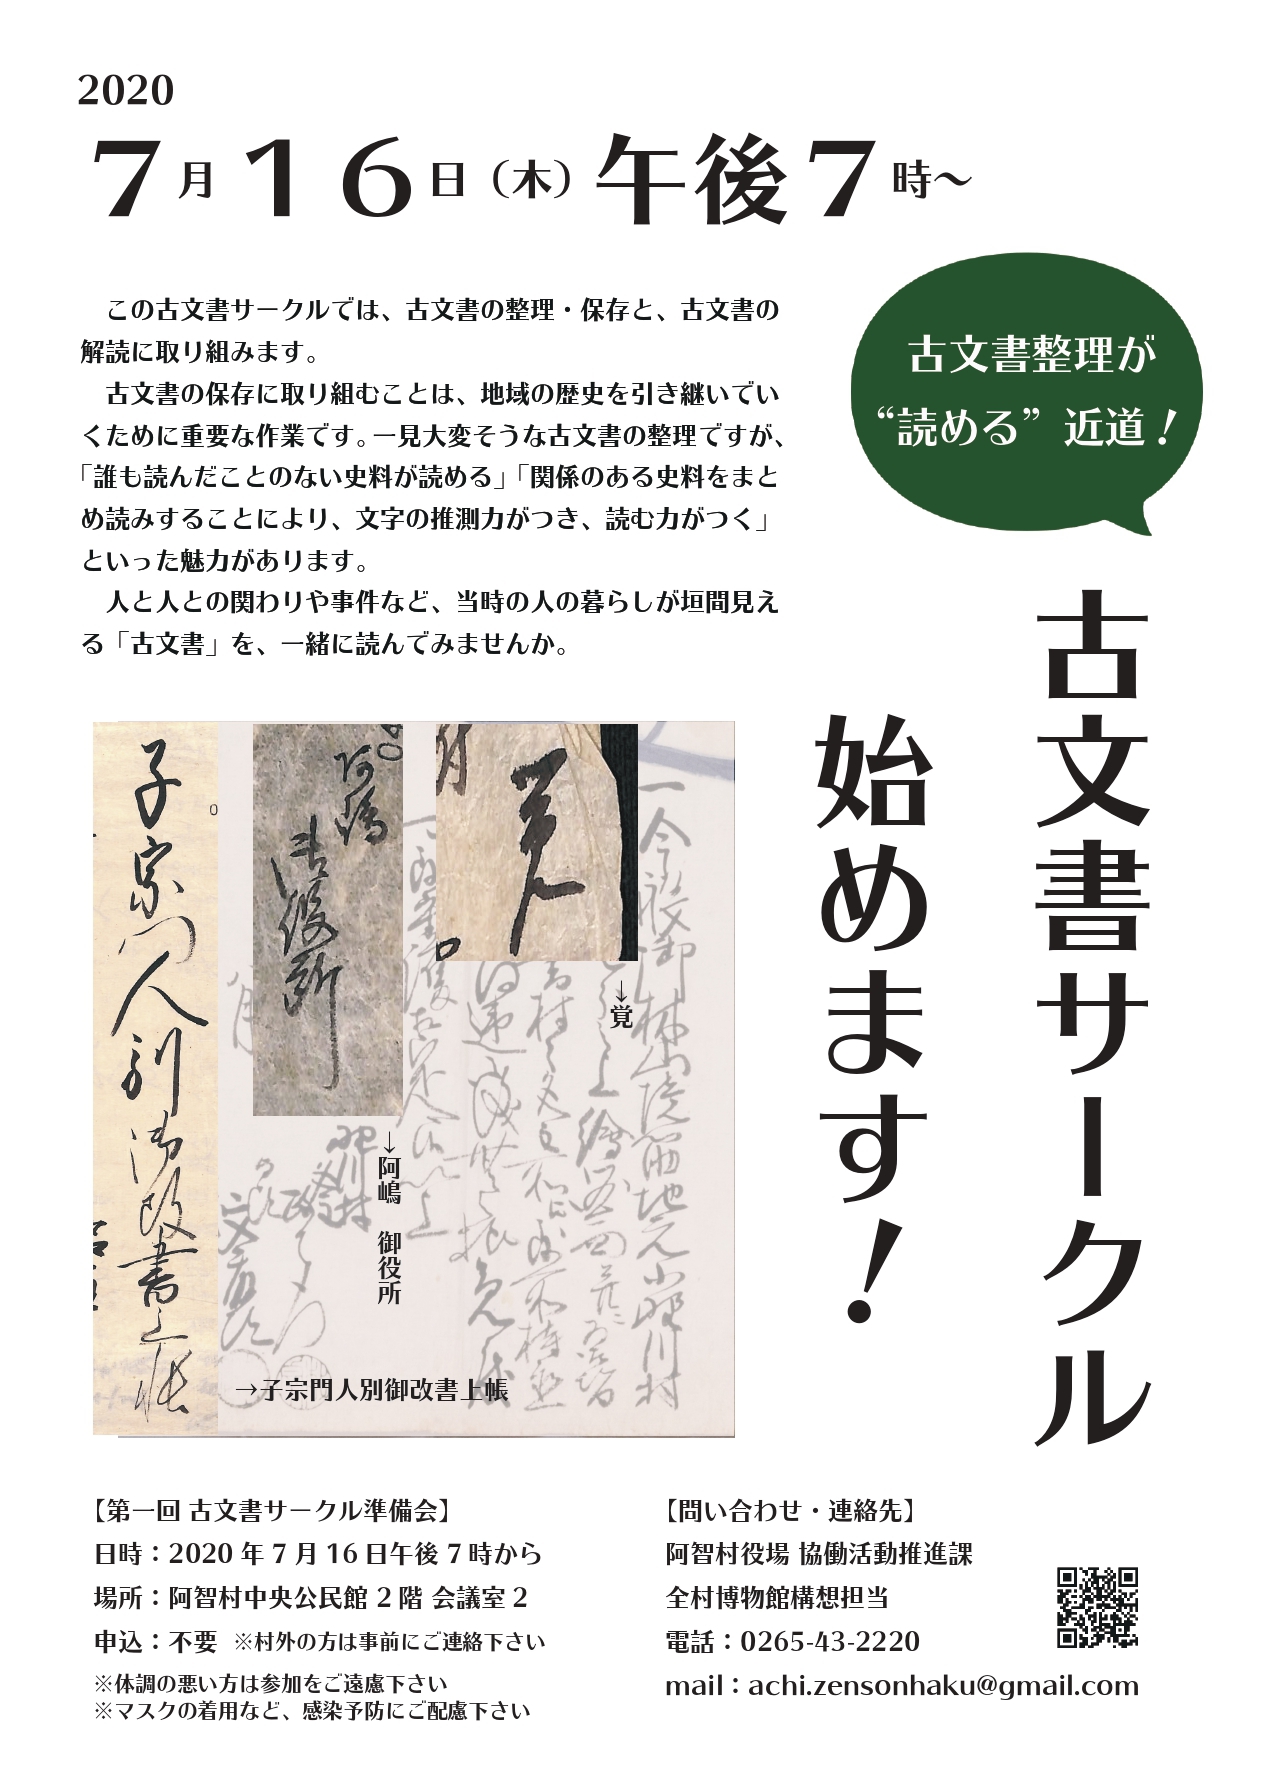 参加者募集】古文書サークル始めます | 阿智村全村博物館